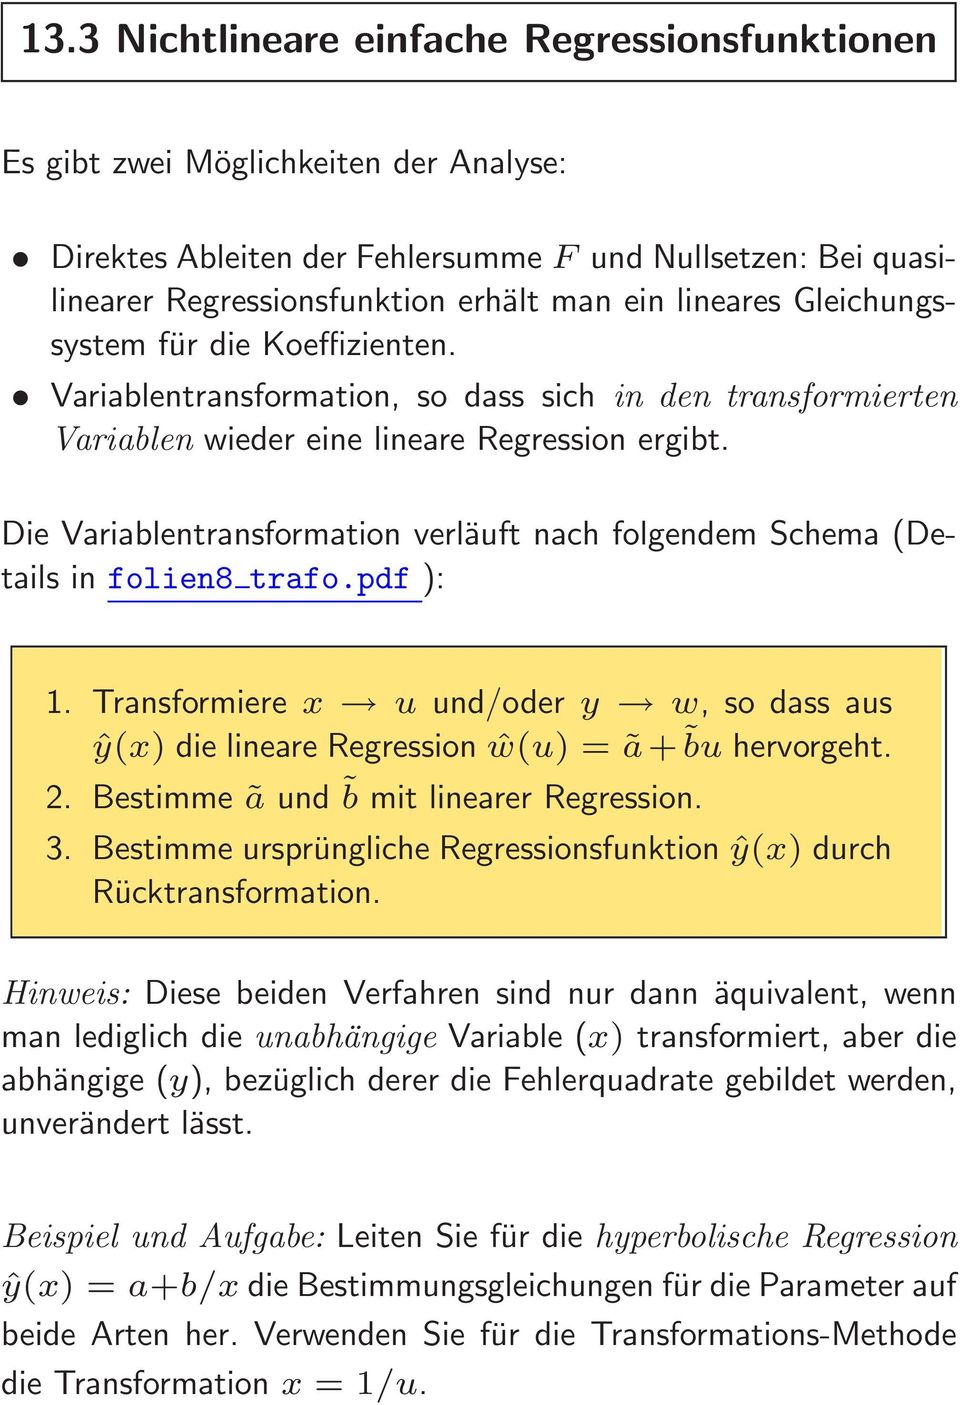 Die Variablentransformation verläuft nach folgendem Schema (Details in folien8 trafo.pdf ): 1. Transformiere x u und/oder y w, so dass aus ŷ(x) die lineare Regression ŵ(u) = ã+ bu hervorgeht. 2.